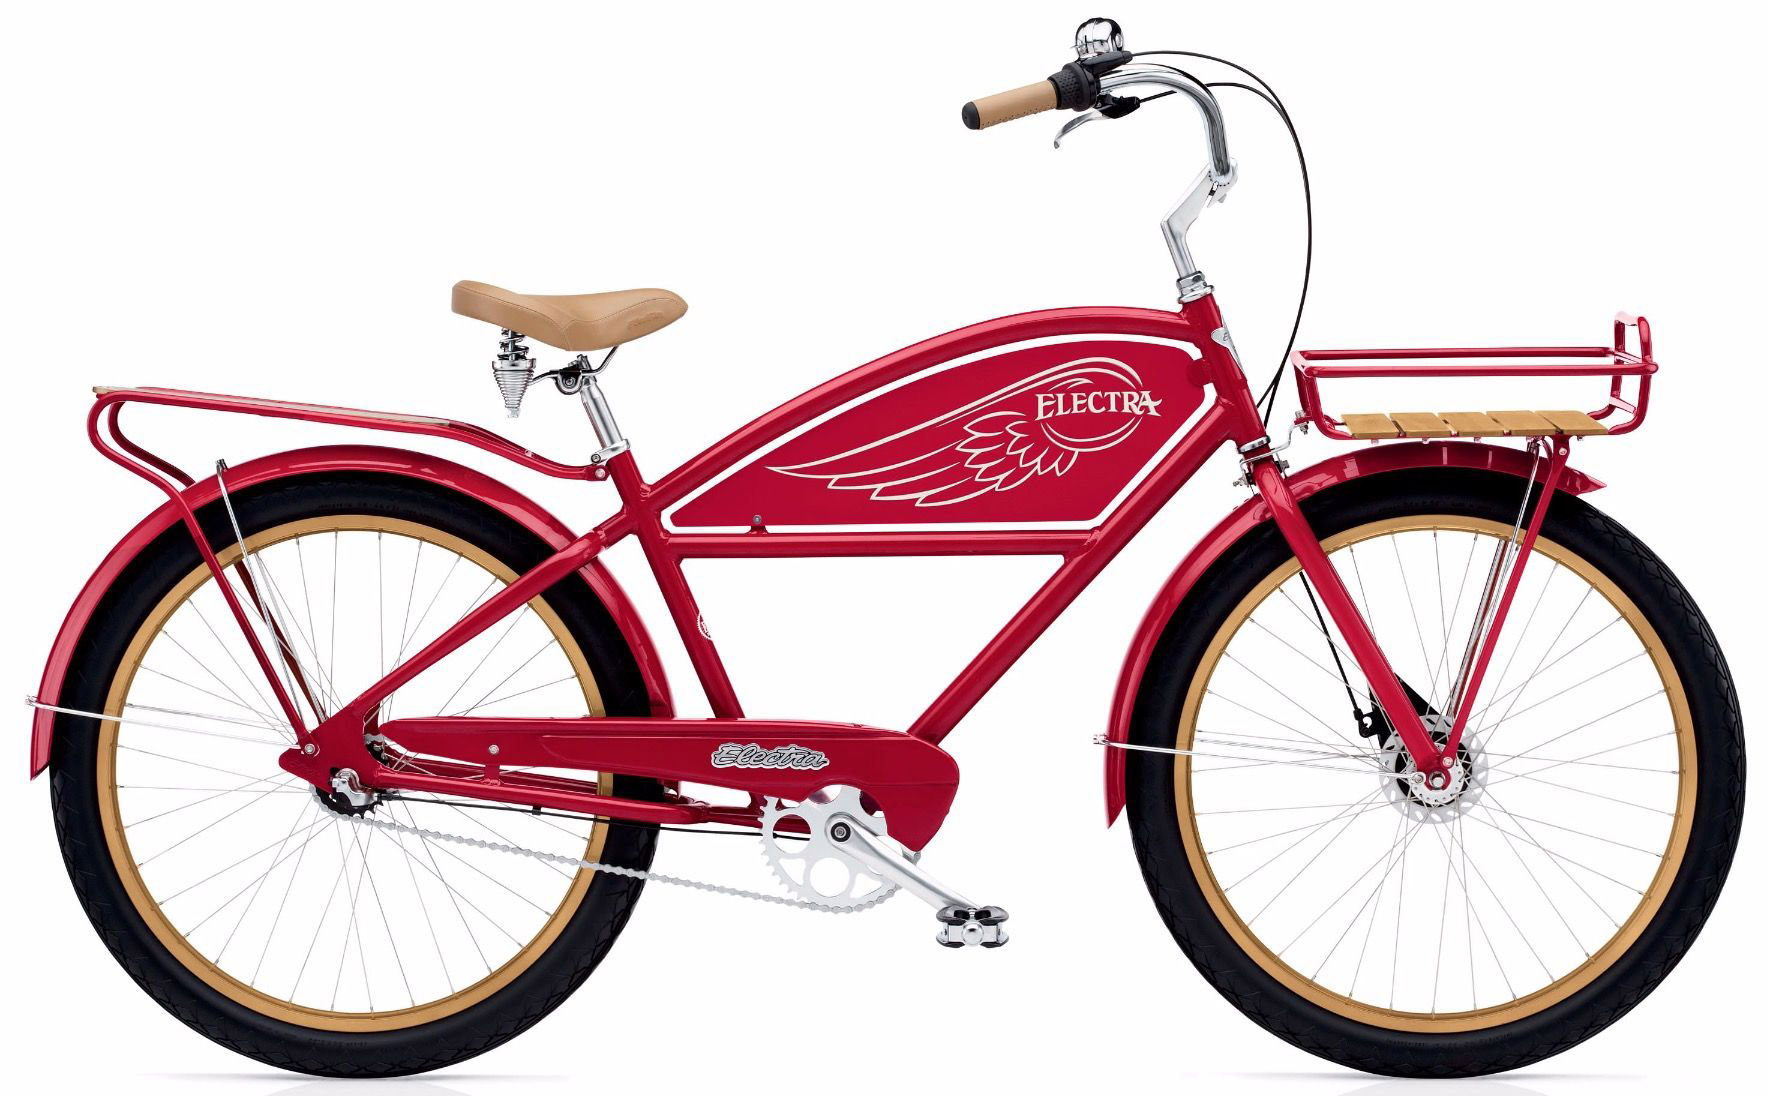  Отзывы о Городском велосипеде Electra Delivery 3i 2020